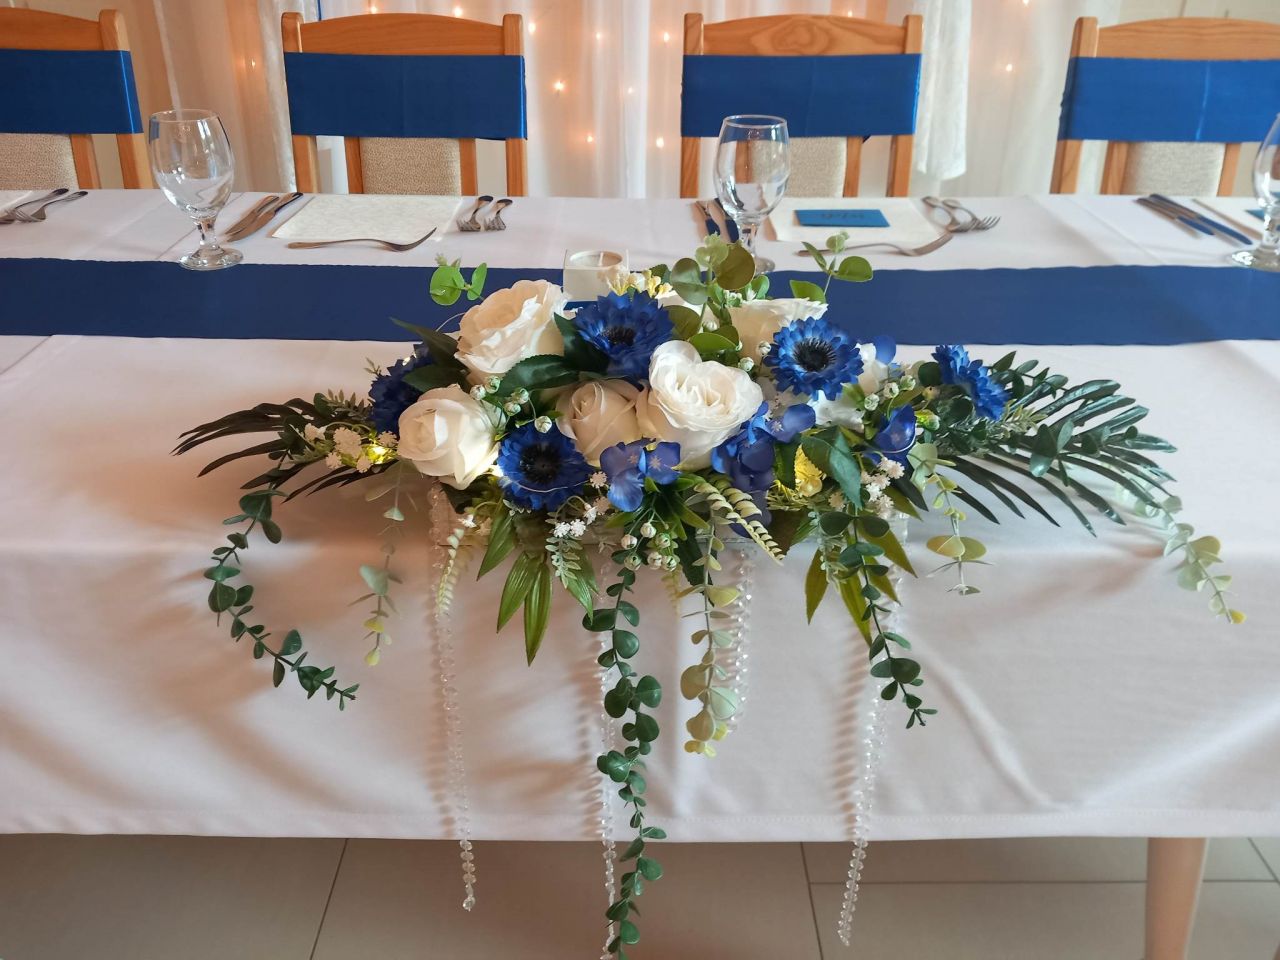 Esküvői főasztal dísz fa dobozban kék-fehér színben leddel